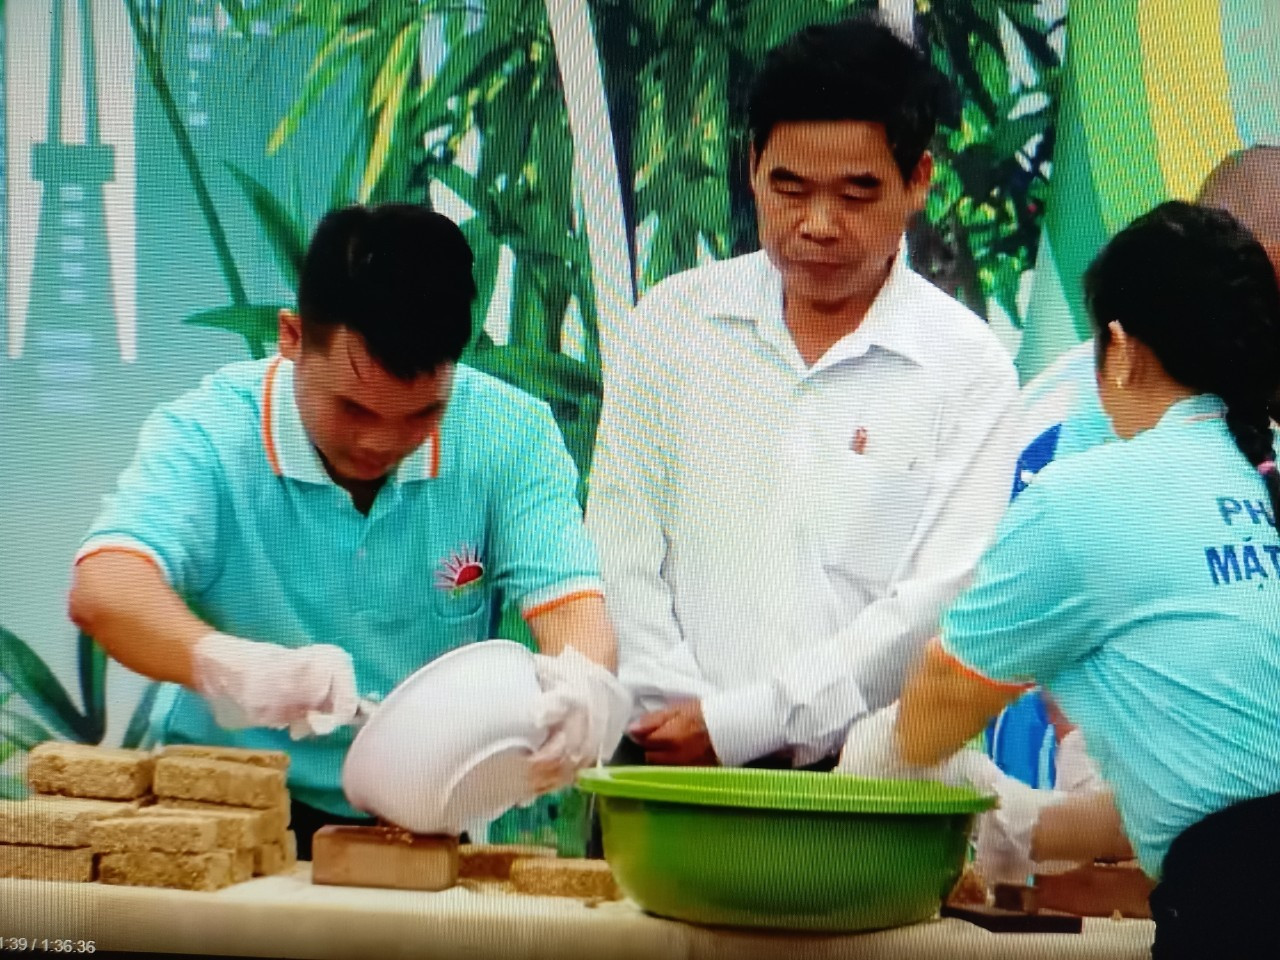 Nông dân làng Đông trổ tài làm bánh khoai chà trong game show truyền hình. Ảnh: N.KẾT